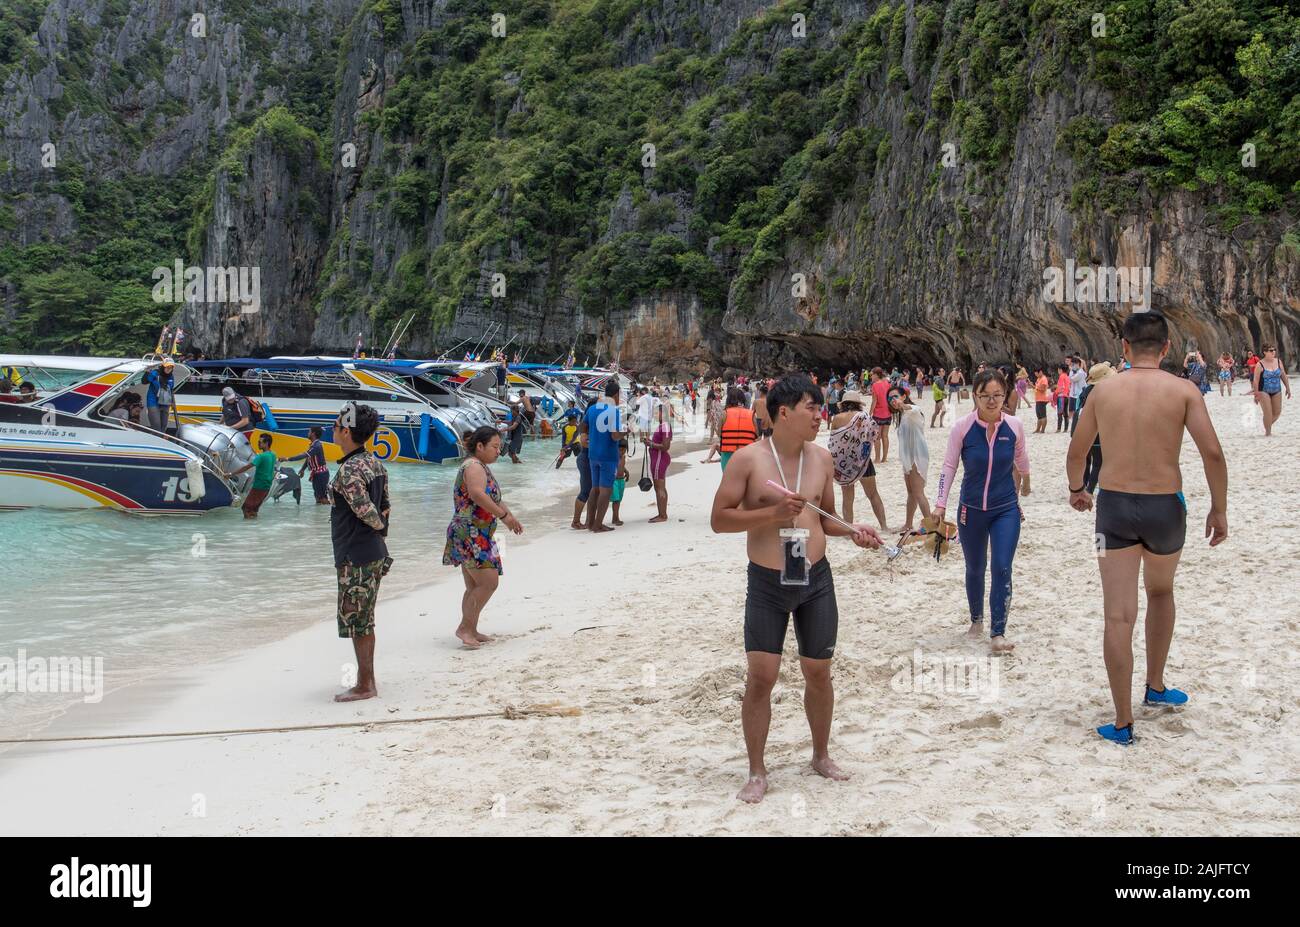 Maya Beach, Phi Phi Islands, Thaïlande : plage surpeuplée, foule de visiteurs. Lieu de tournage pour la plage (film), film avec Leonardo Dicaprio Banque D'Images